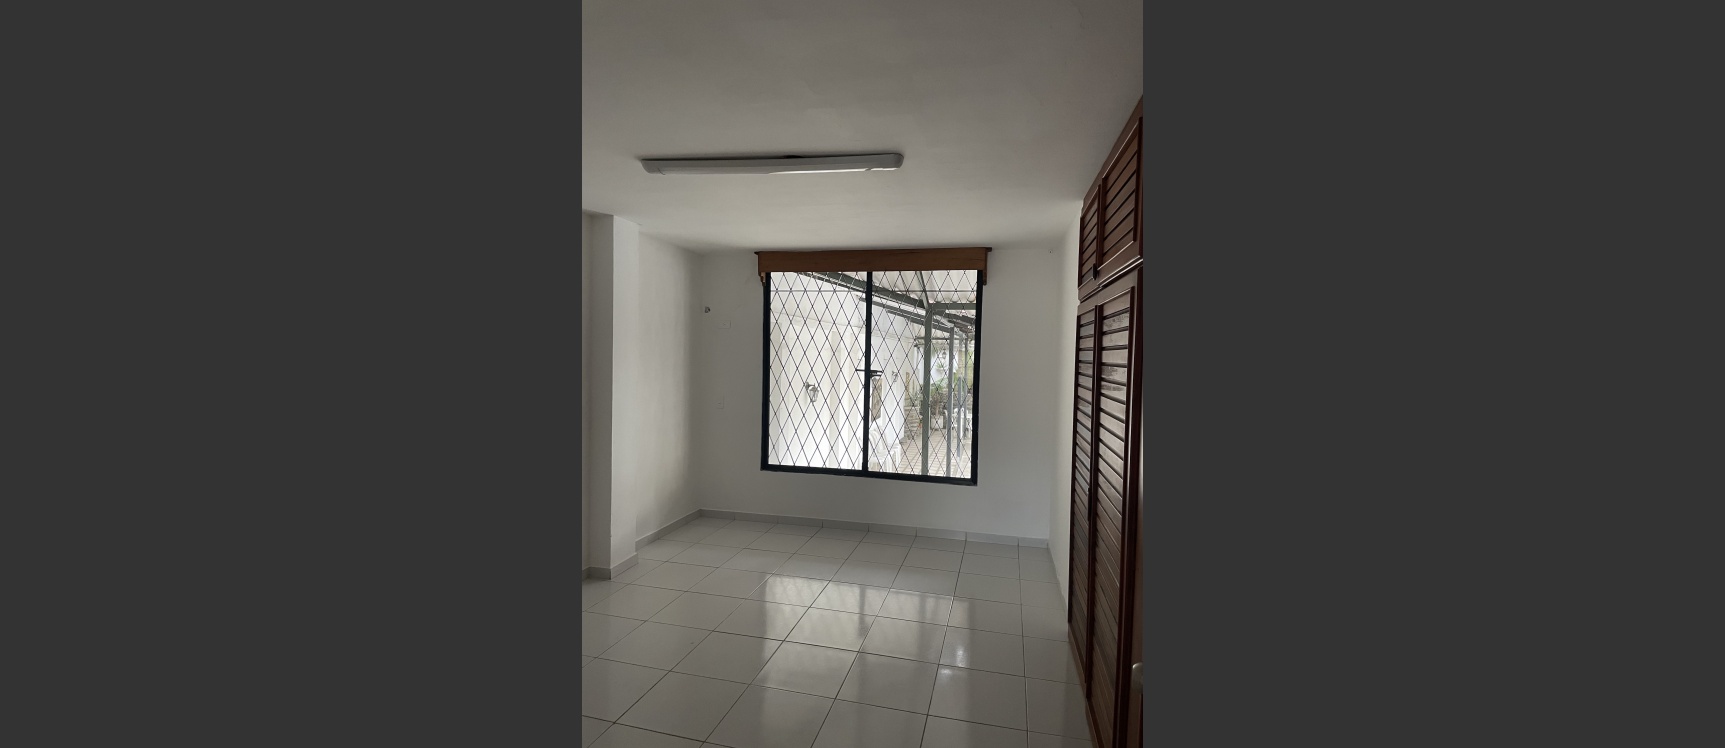 GeoBienes - Departamento en alquiler ubicado en Urdesa - Plusvalia Guayaquil Casas de venta y alquiler Inmobiliaria Ecuador